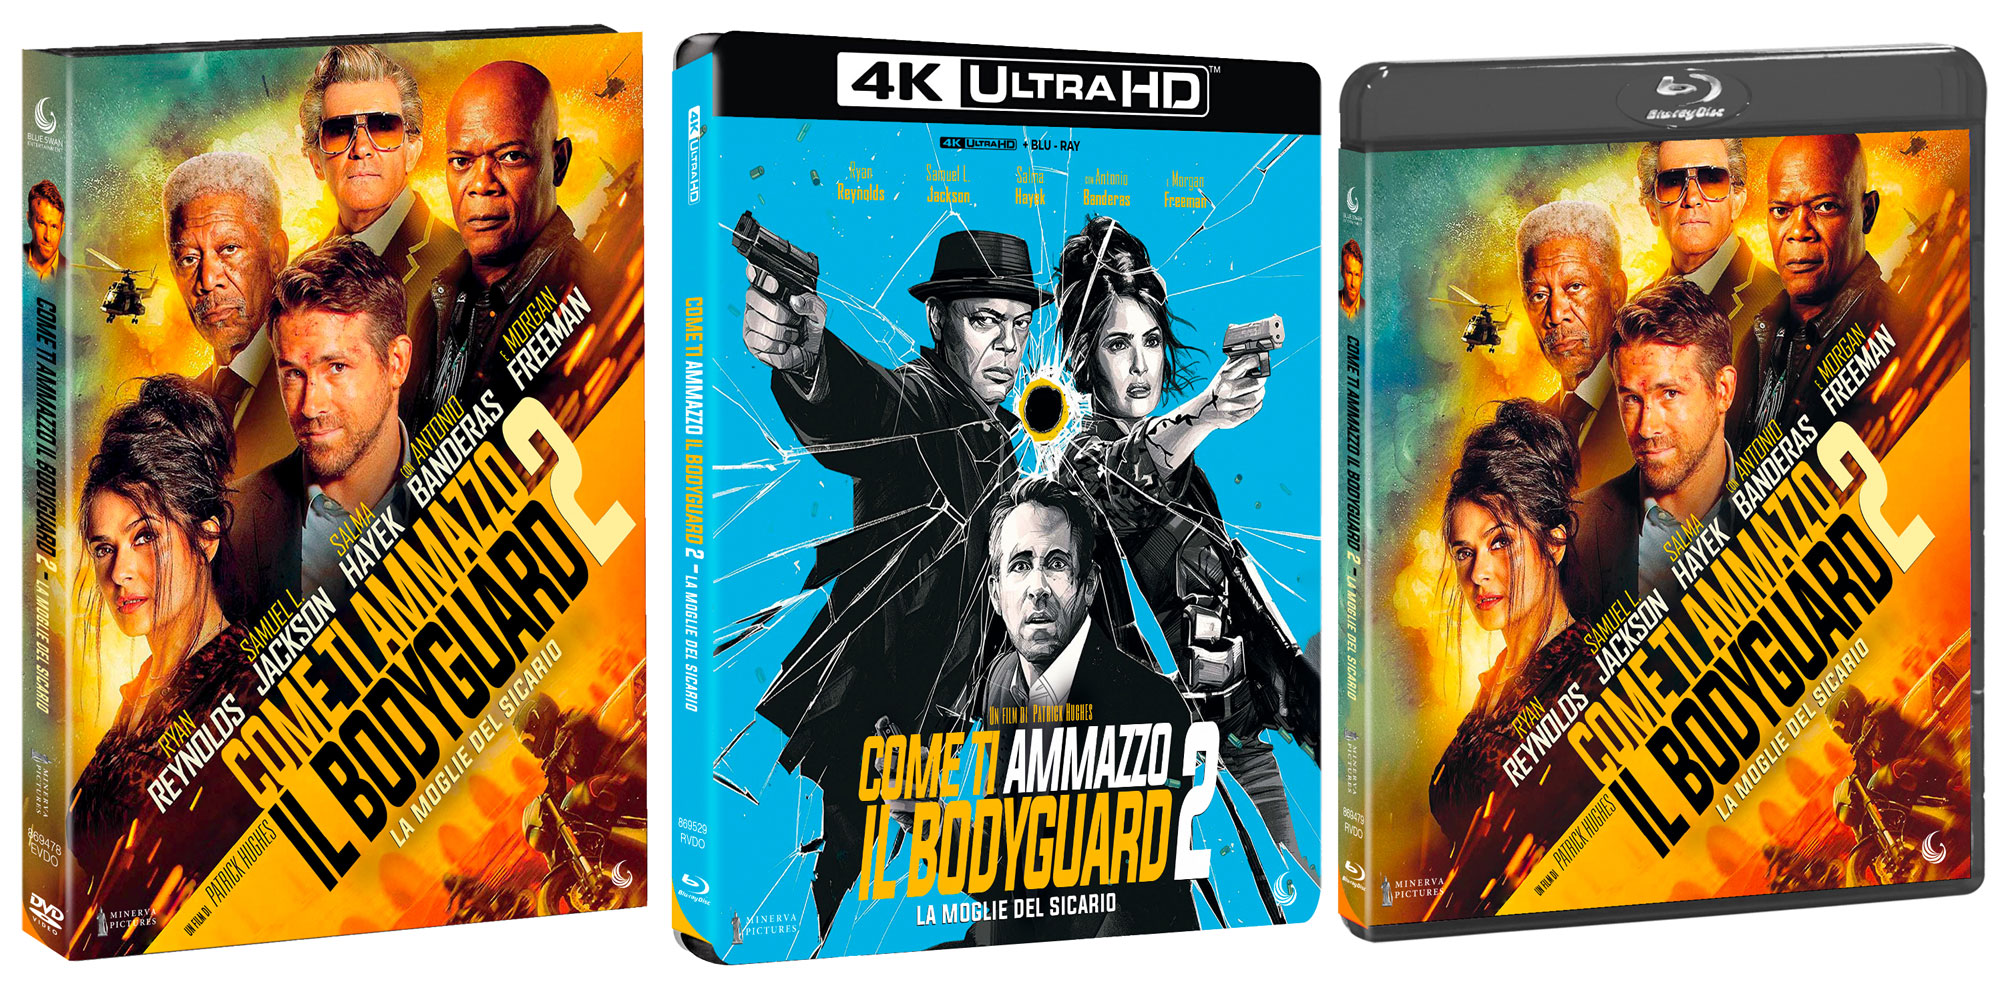 Come ti ammazzo il bodyguard 2: La Moglie del Sicario di Patrick Hughes in DVD, Blu-ray e 4K